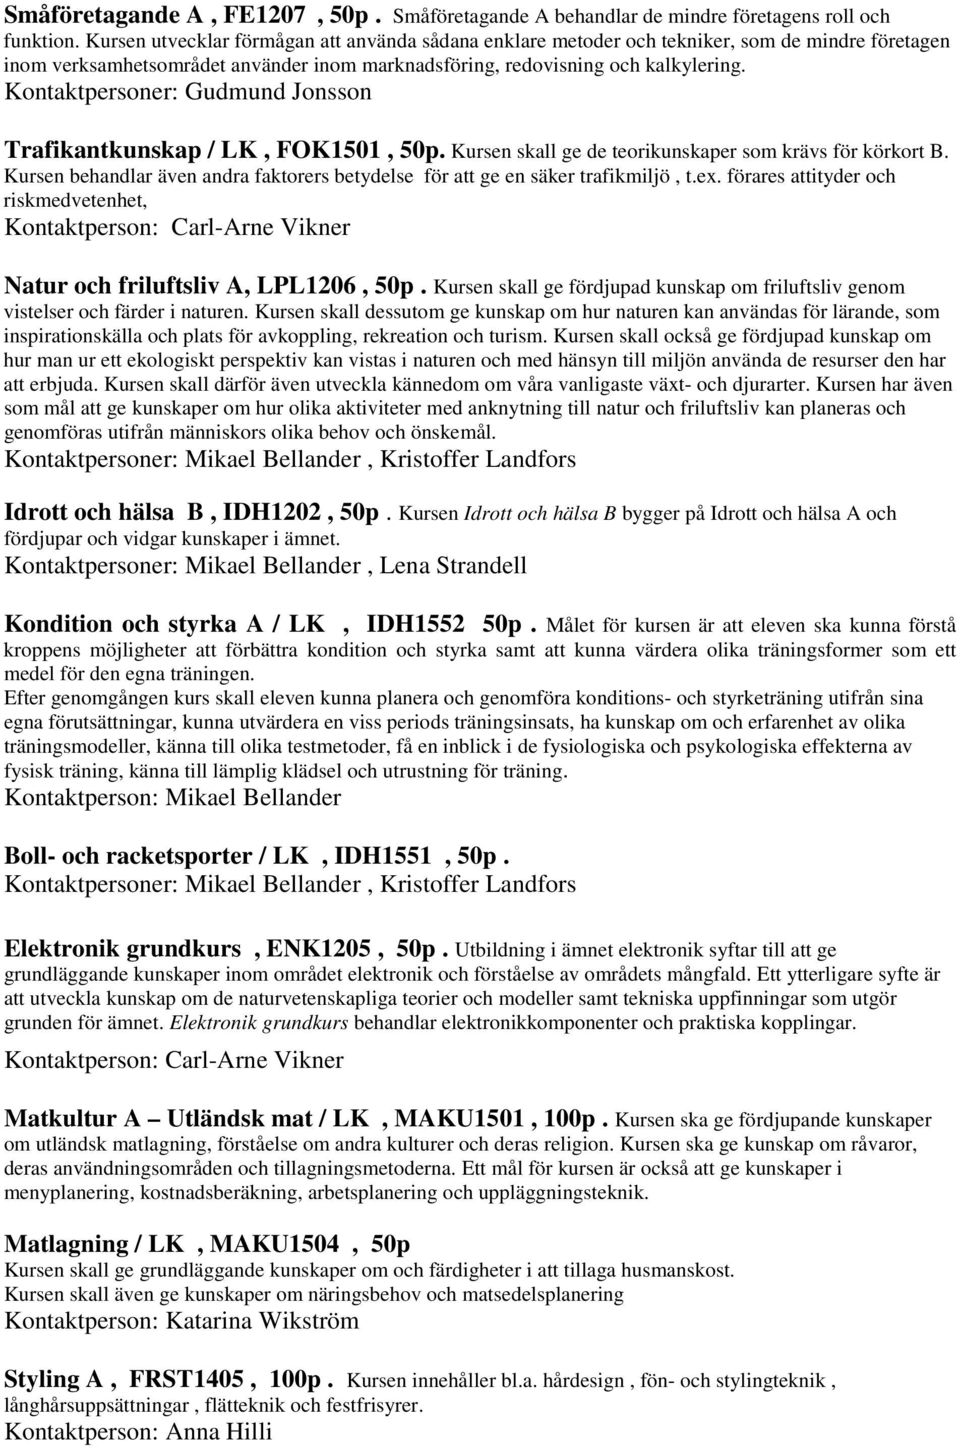 Kontaktpersoner: Gudmund Jonsson Trafikantkunskap / LK, FOK1501, 50p. Kursen skall ge de teorikunskaper som krävs för körkort B.